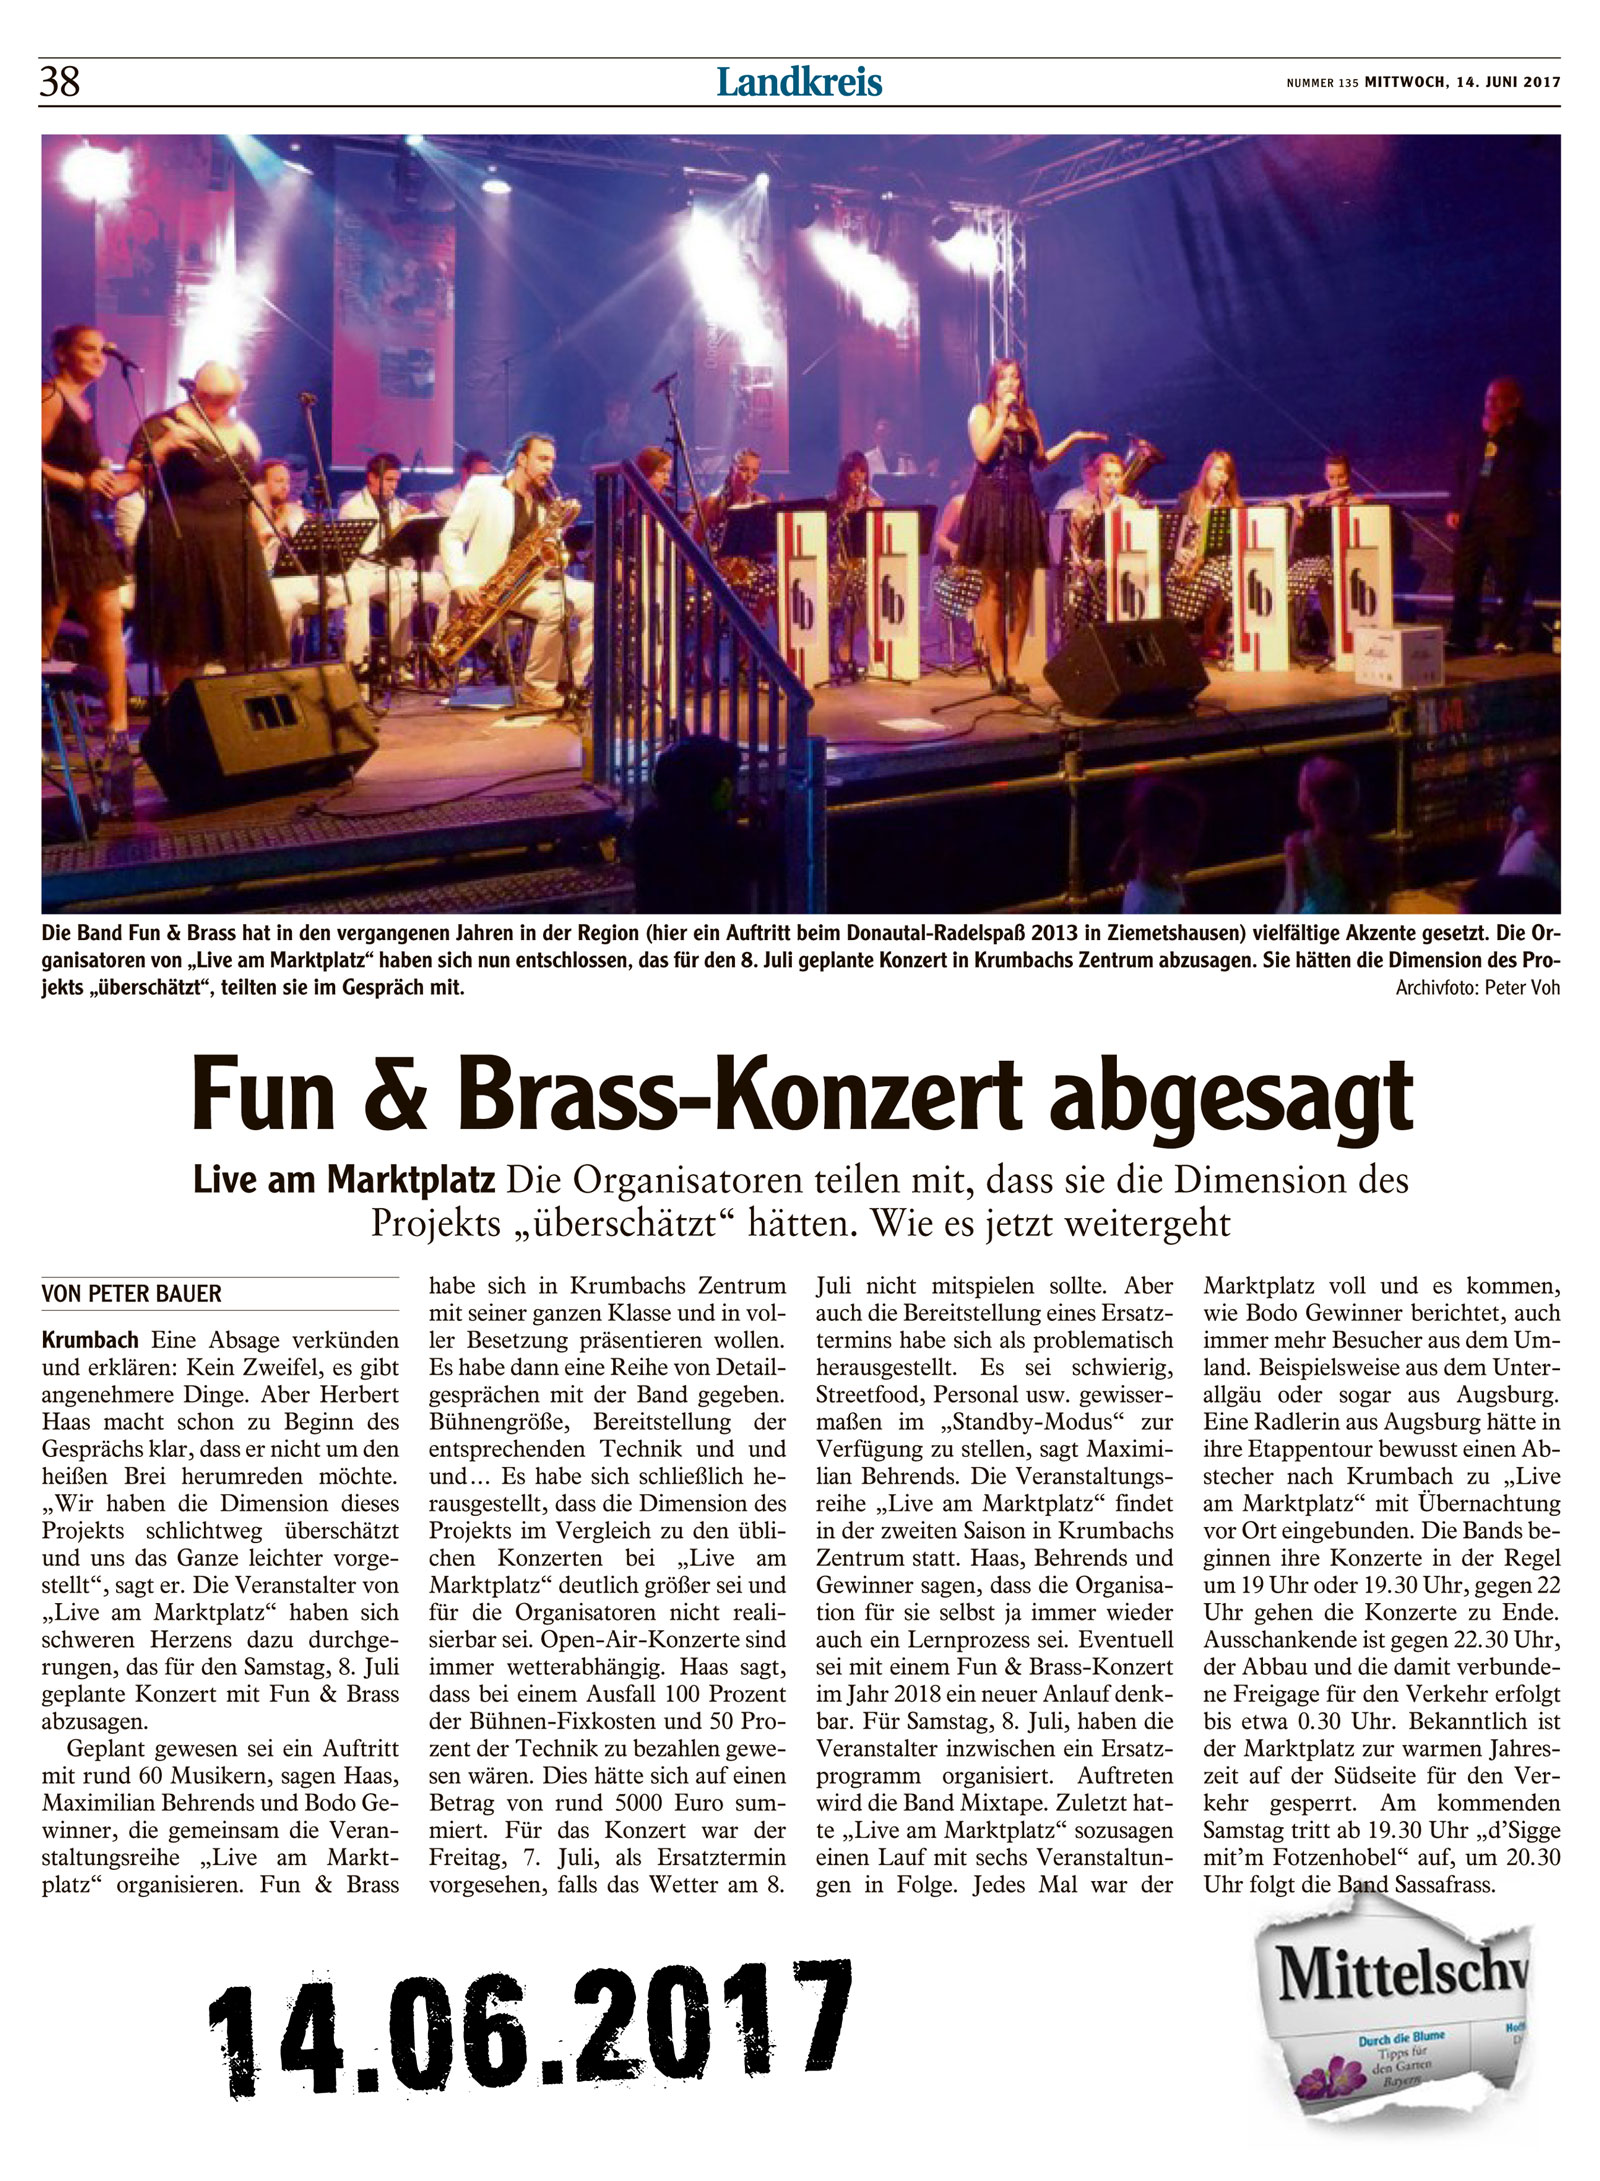 Fun & Brass Open Air leider abgesagt -  live am Marktplatz 2017 06 14 Mittelschwaebische Nachrichten